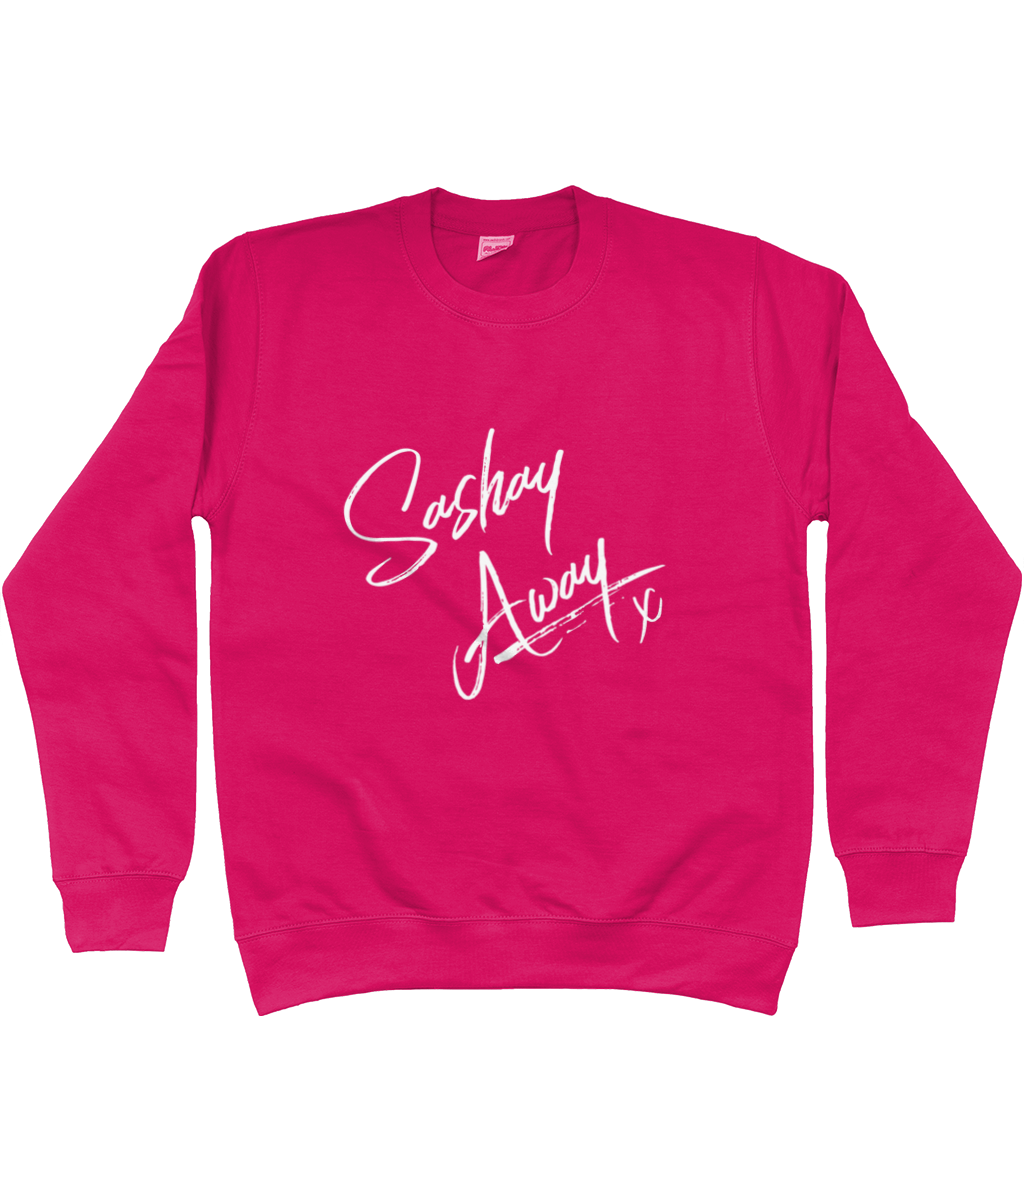 Sashay Away - Sweatshirt